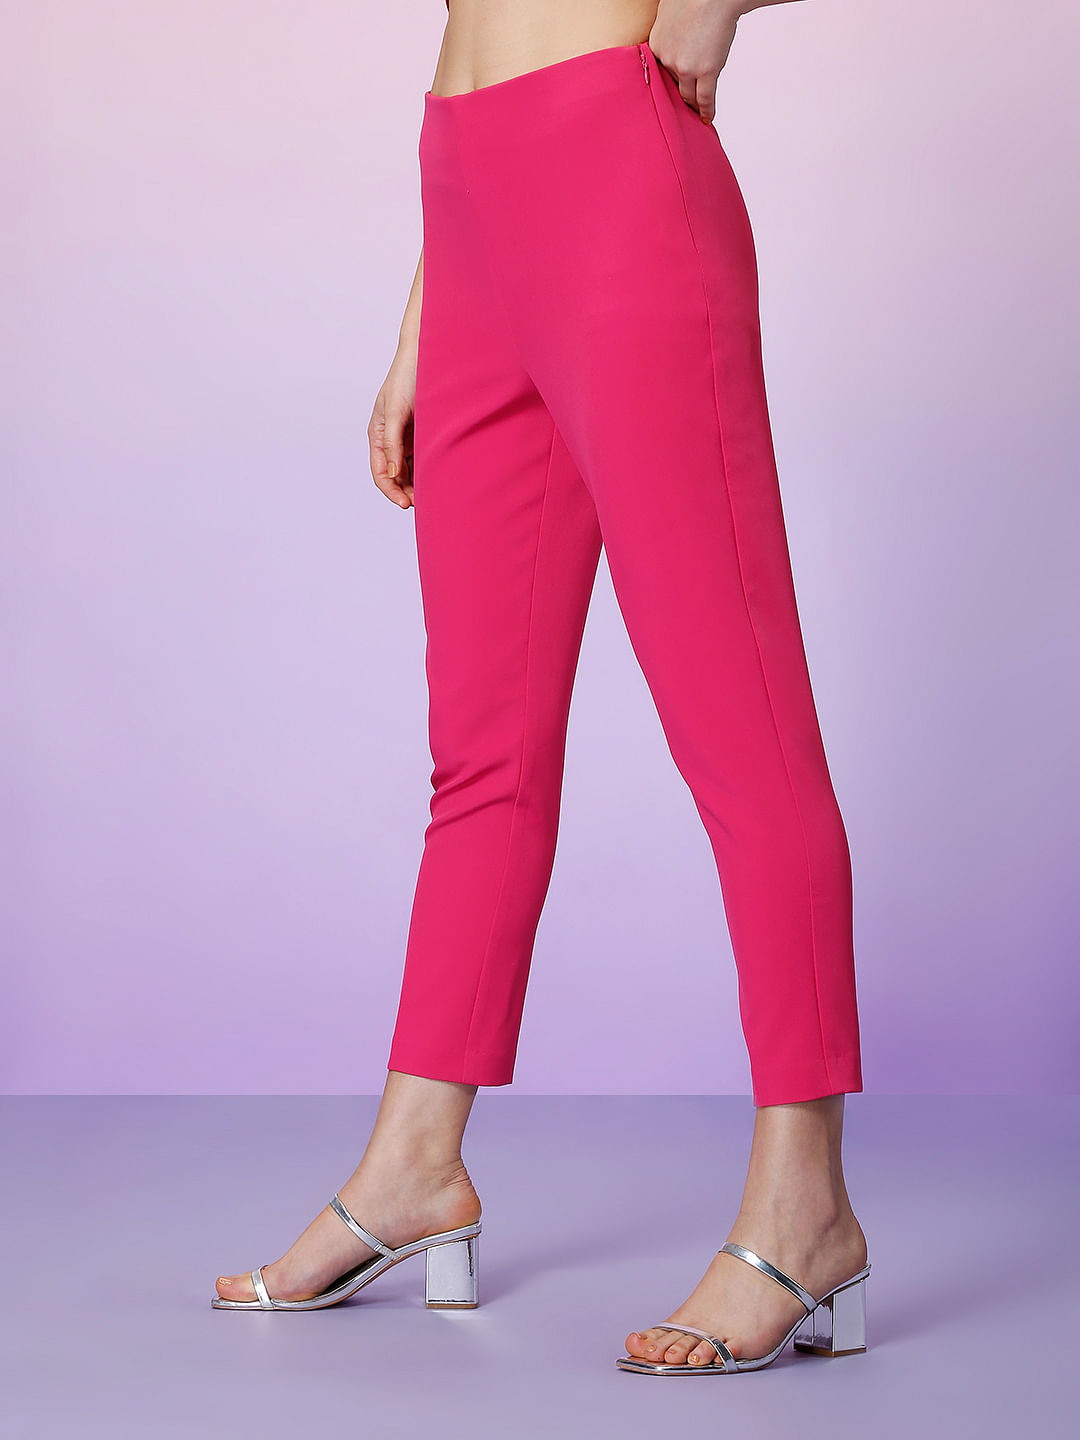 Biba | Julien Macdonald Tailored Trousers | Pink | House of Fraser